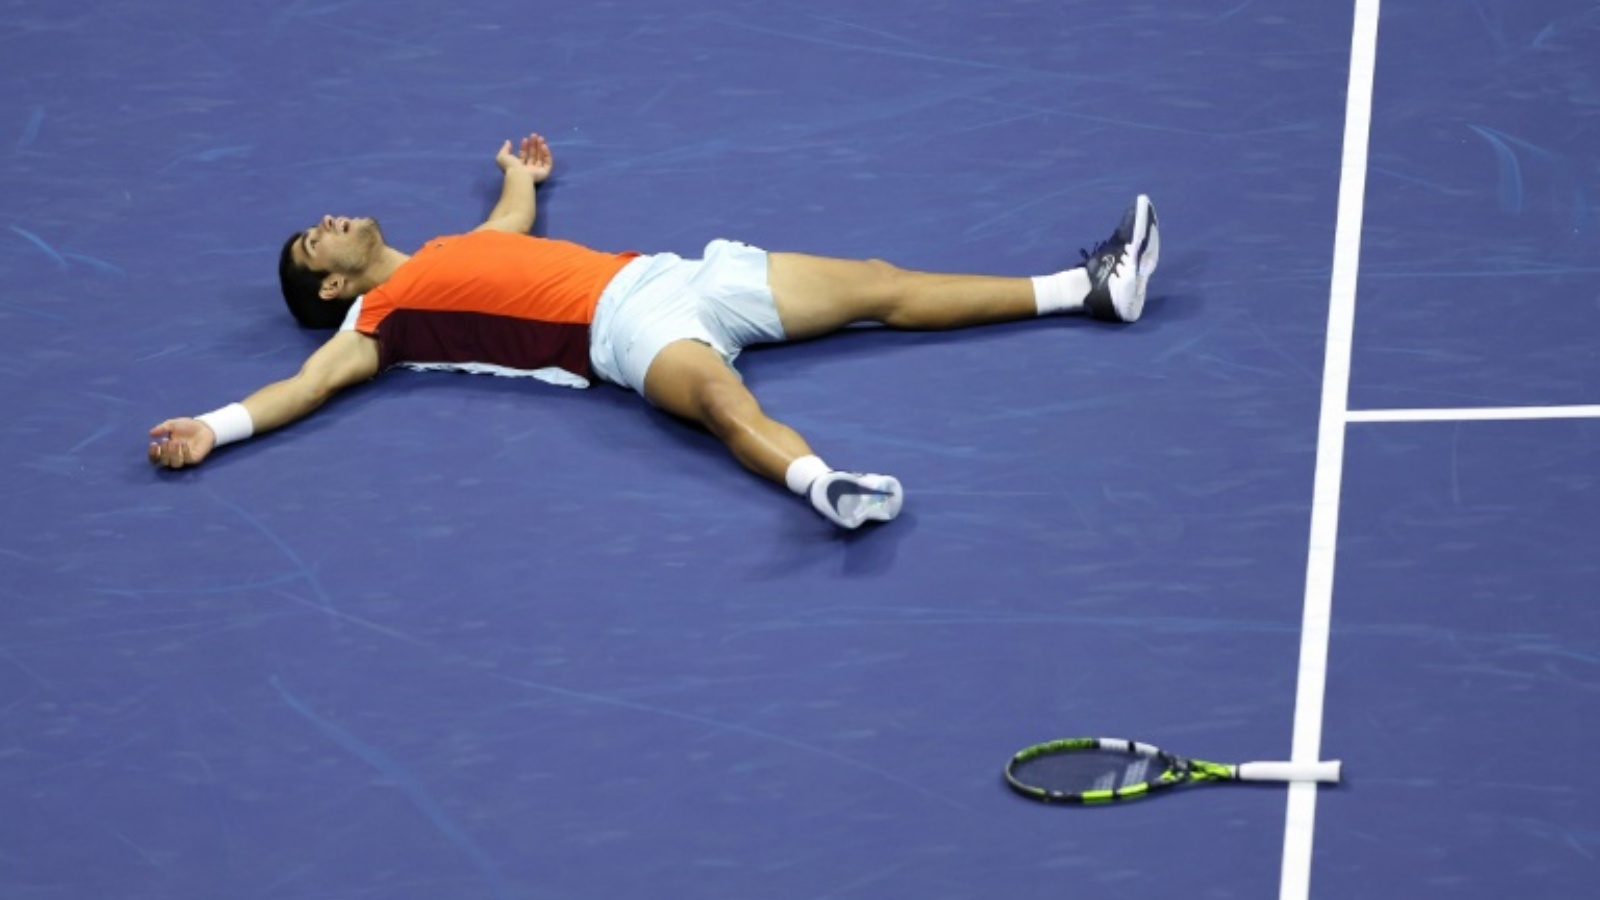 الإسباني كارلوس ألكاراس يحتفل بفوزه بلقب بطولة الولايات المتحدة المفتوحة في كرة المضرب على ملاعب فلاشينغ ميدوز في 11 سبتمبر 2022.